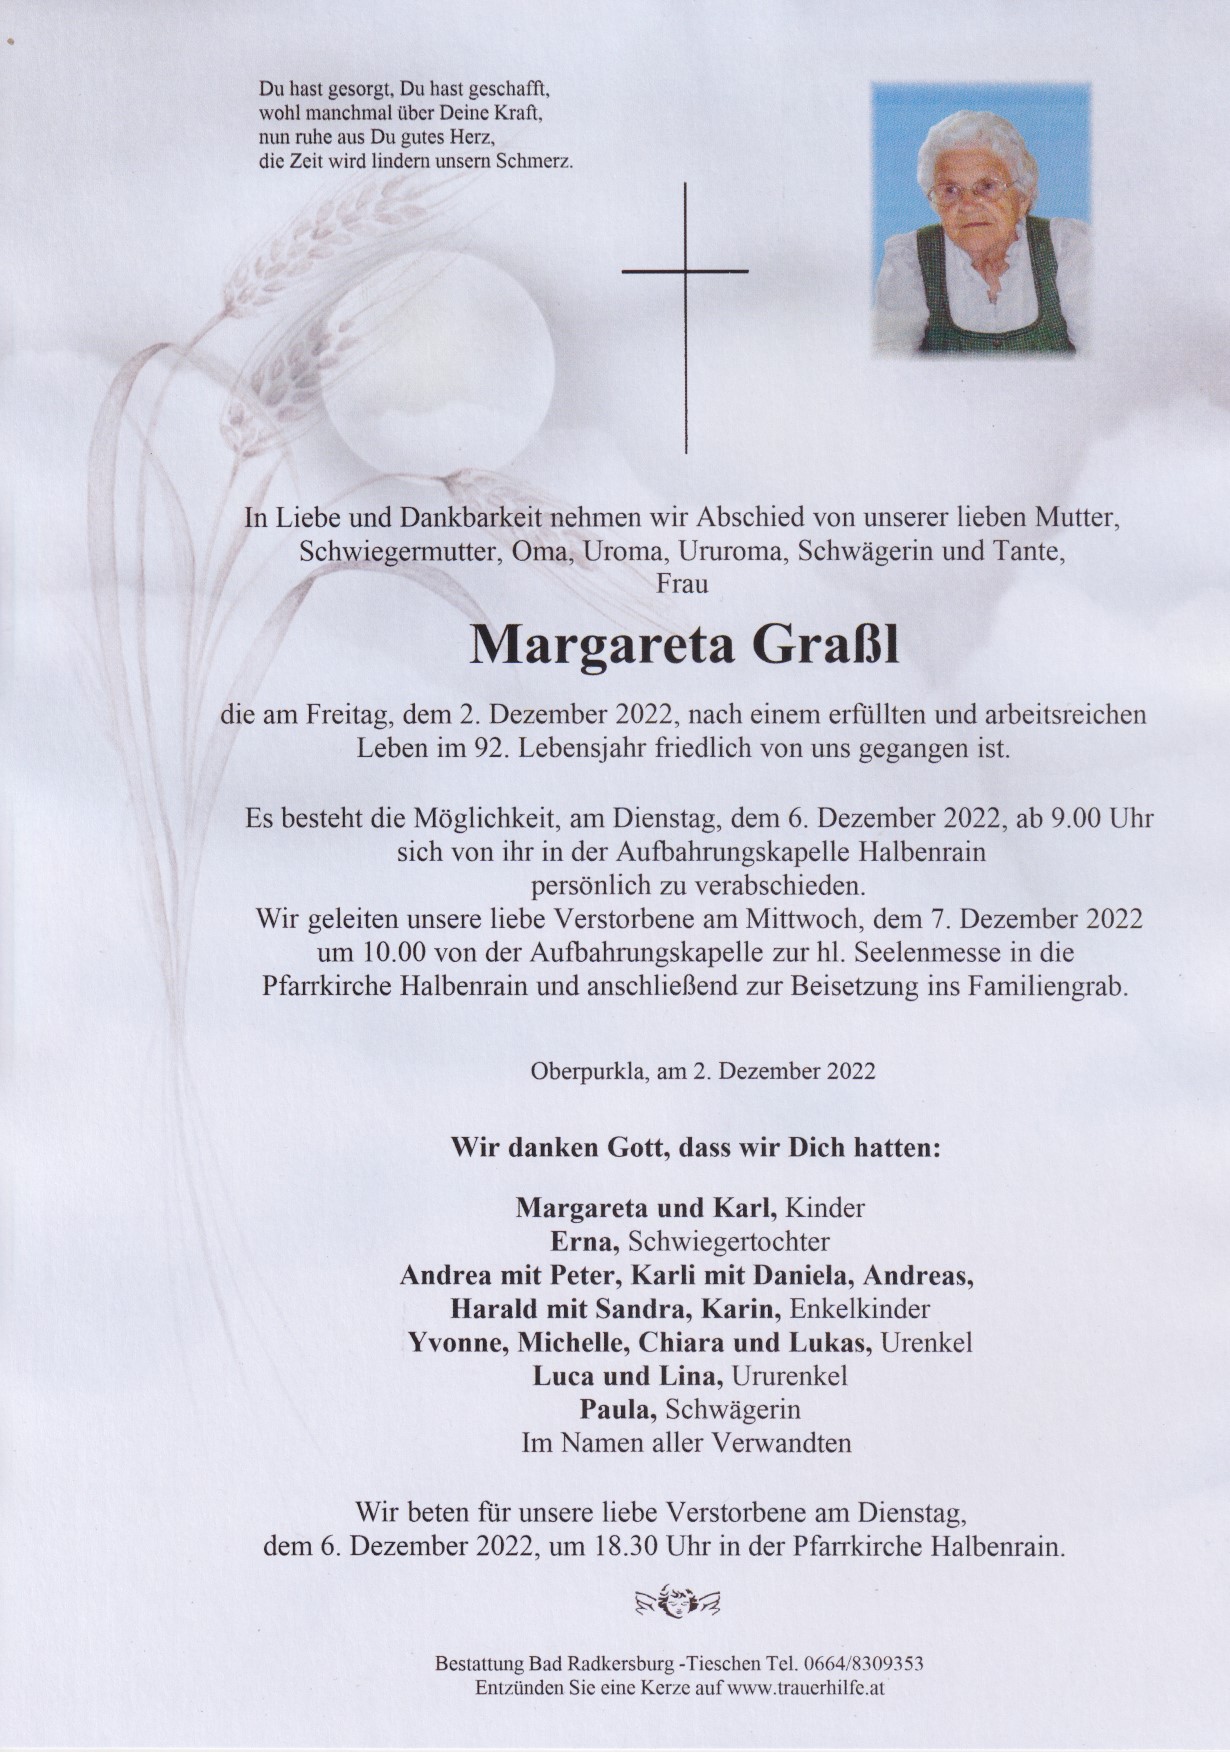 Margareta Graßl